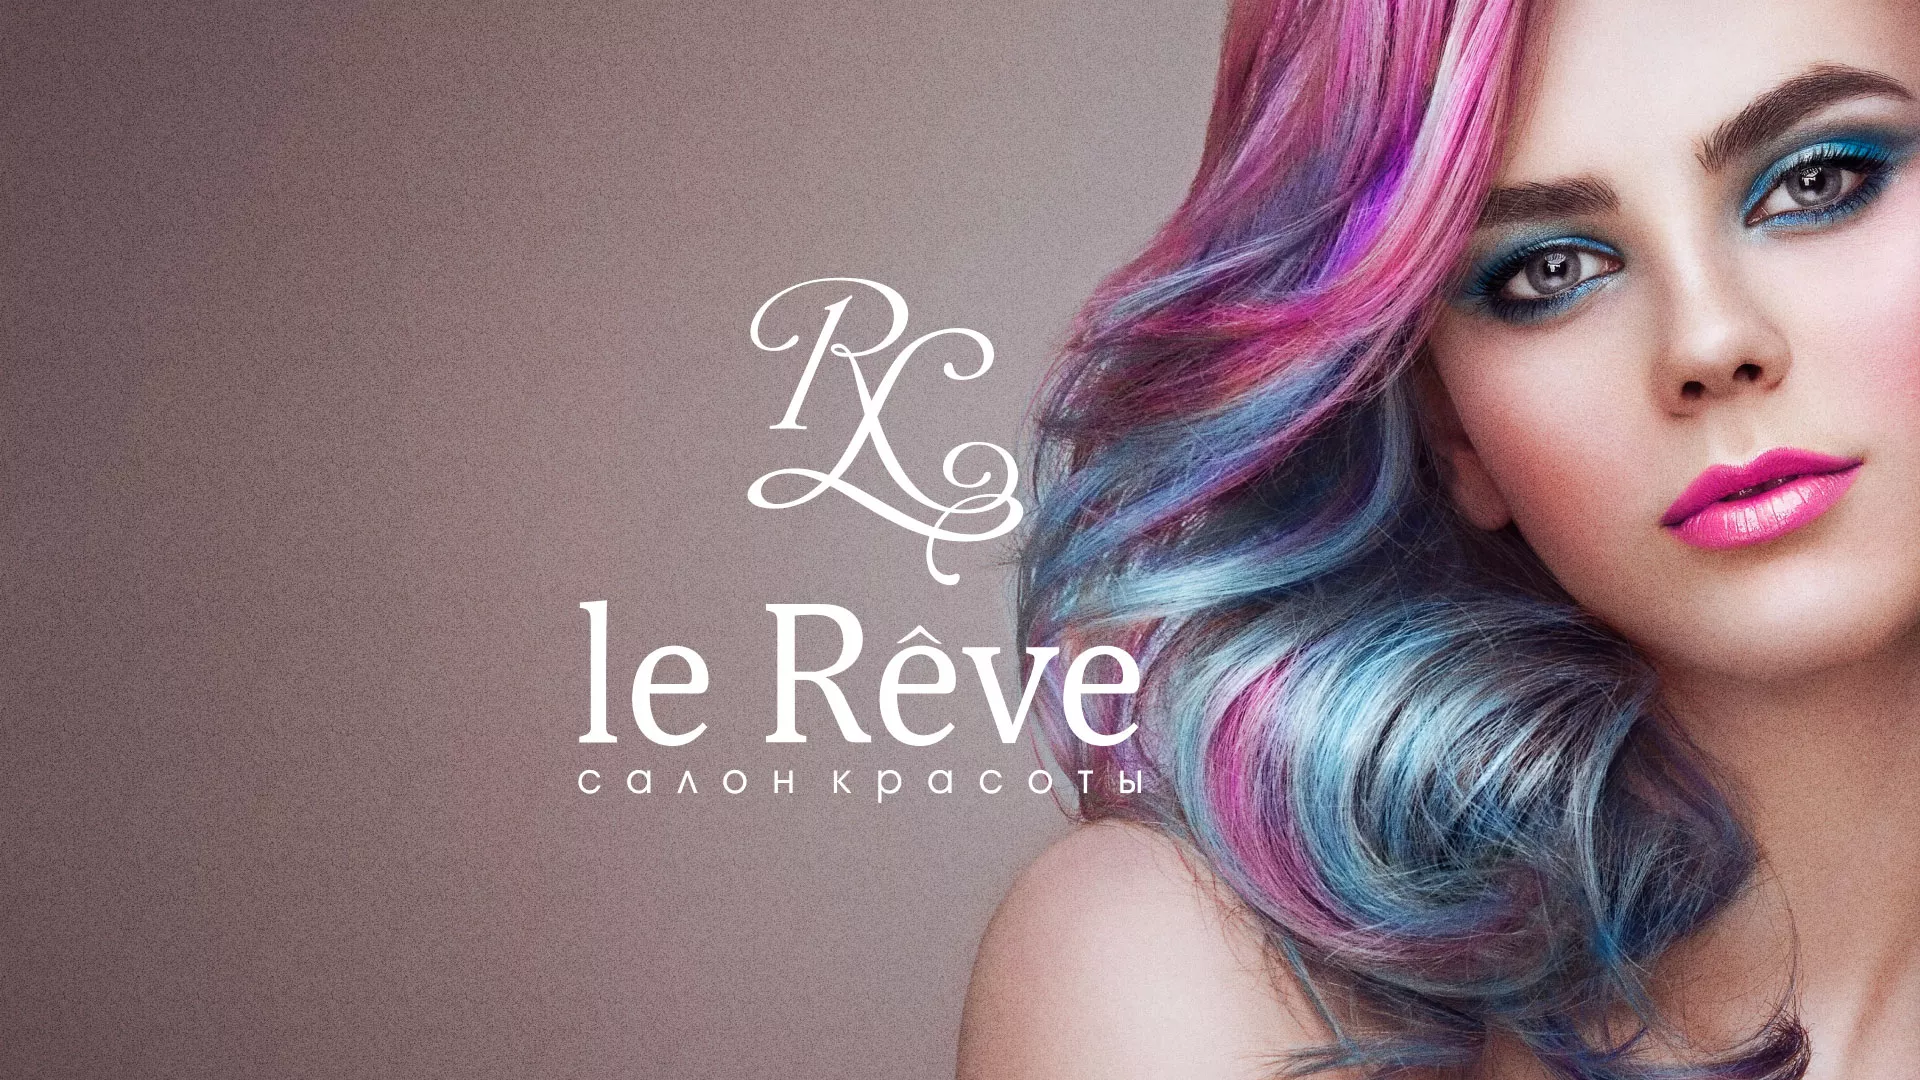 Создание сайта для салона красоты «Le Reve» в Медвежьегорске